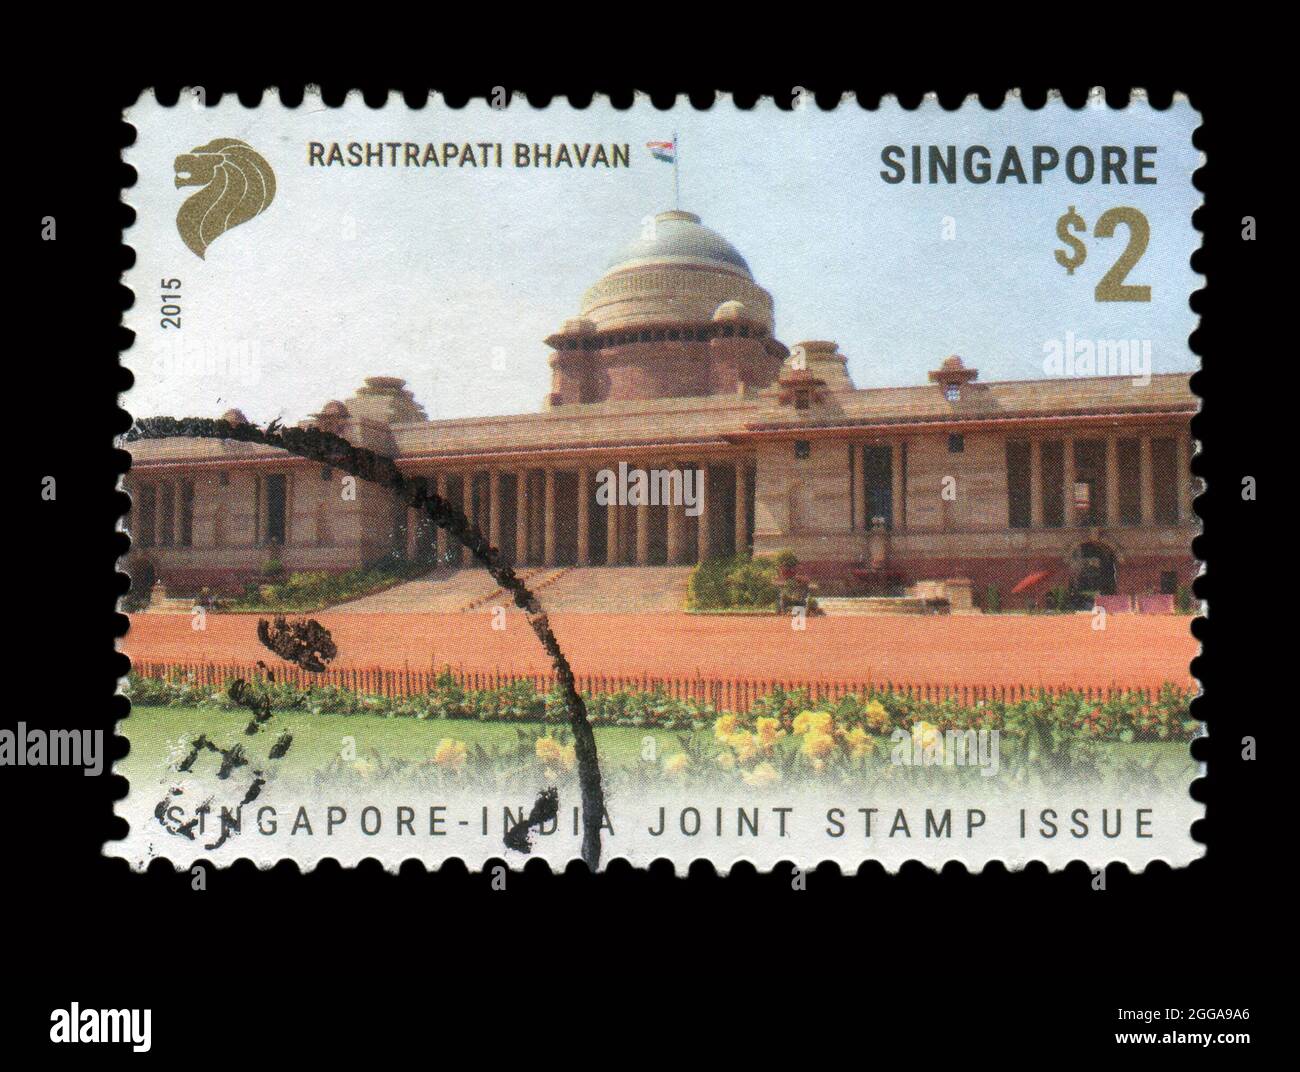 Il timbro stampato a Singapore mostra l'immagine del Singapore - India Joint Stamp Issue, circa 2015. Foto Stock